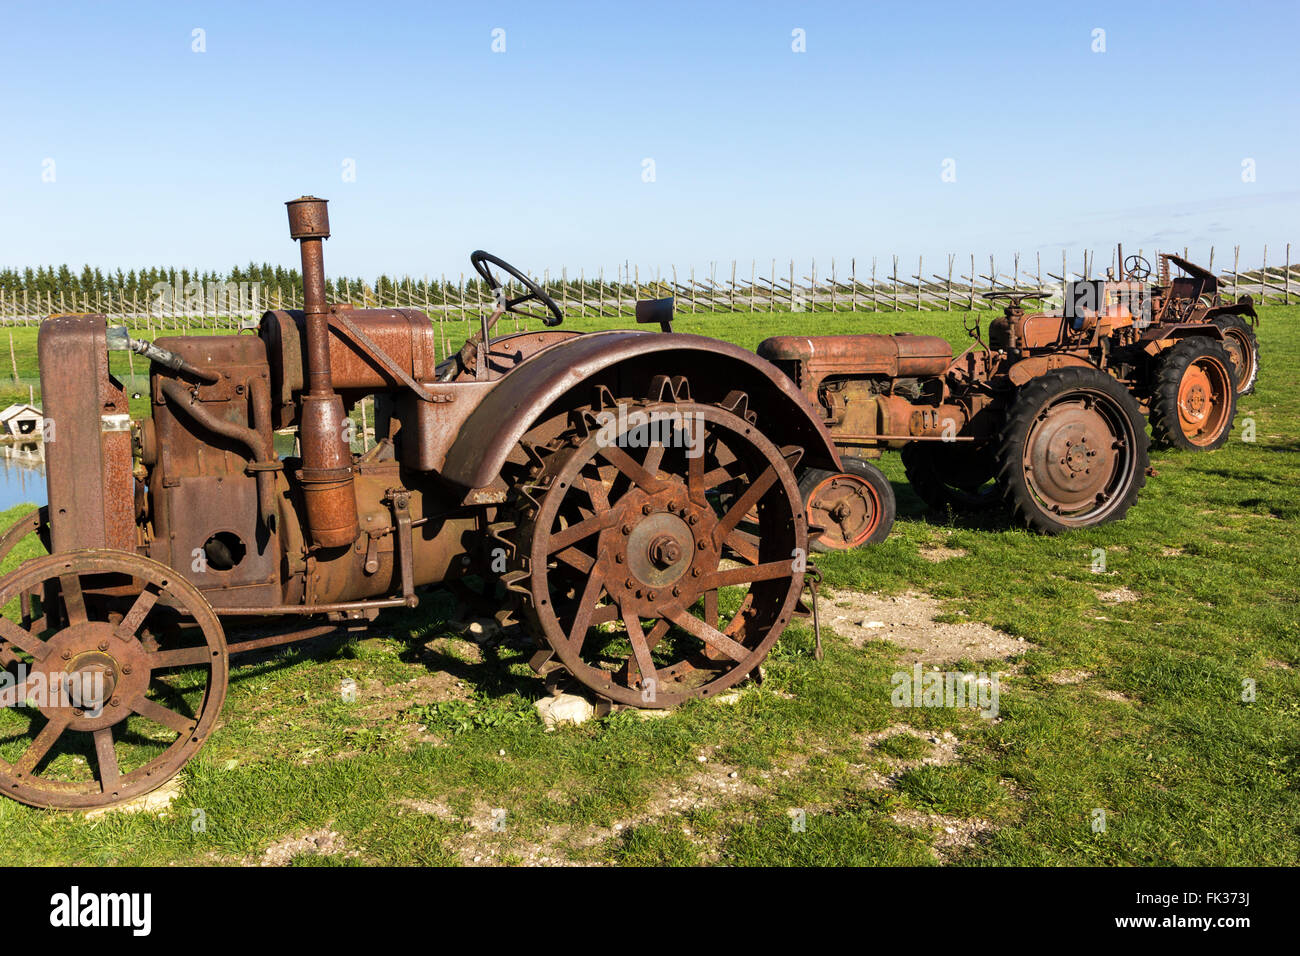 old-tractors-on-the-field-in-estonia-FK373J-1.jpg